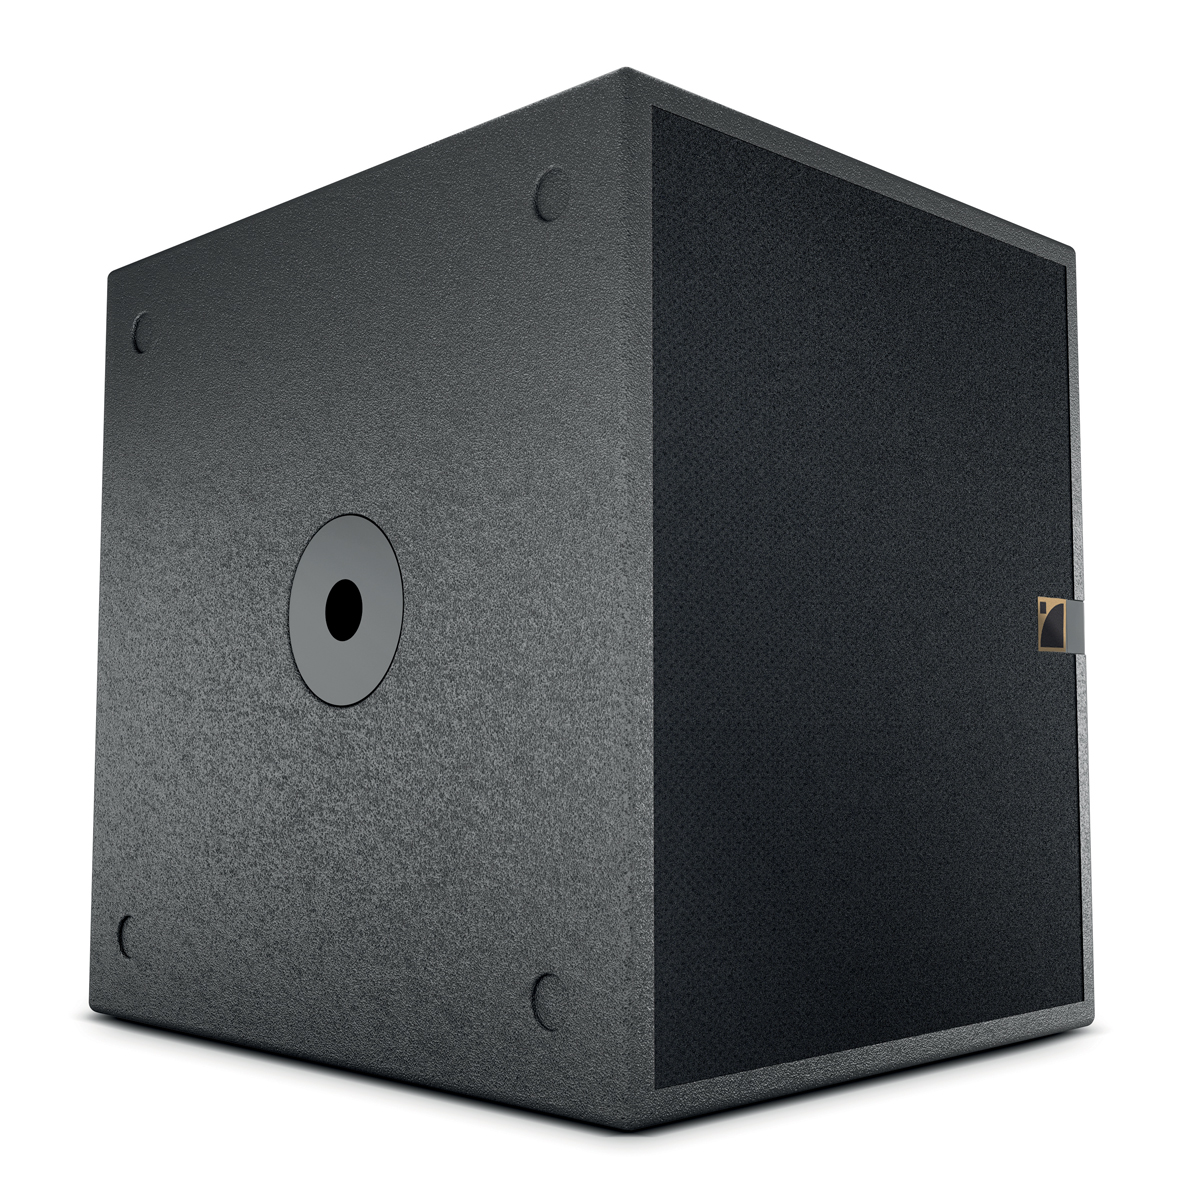 L-Acoustics SB 15P speakers